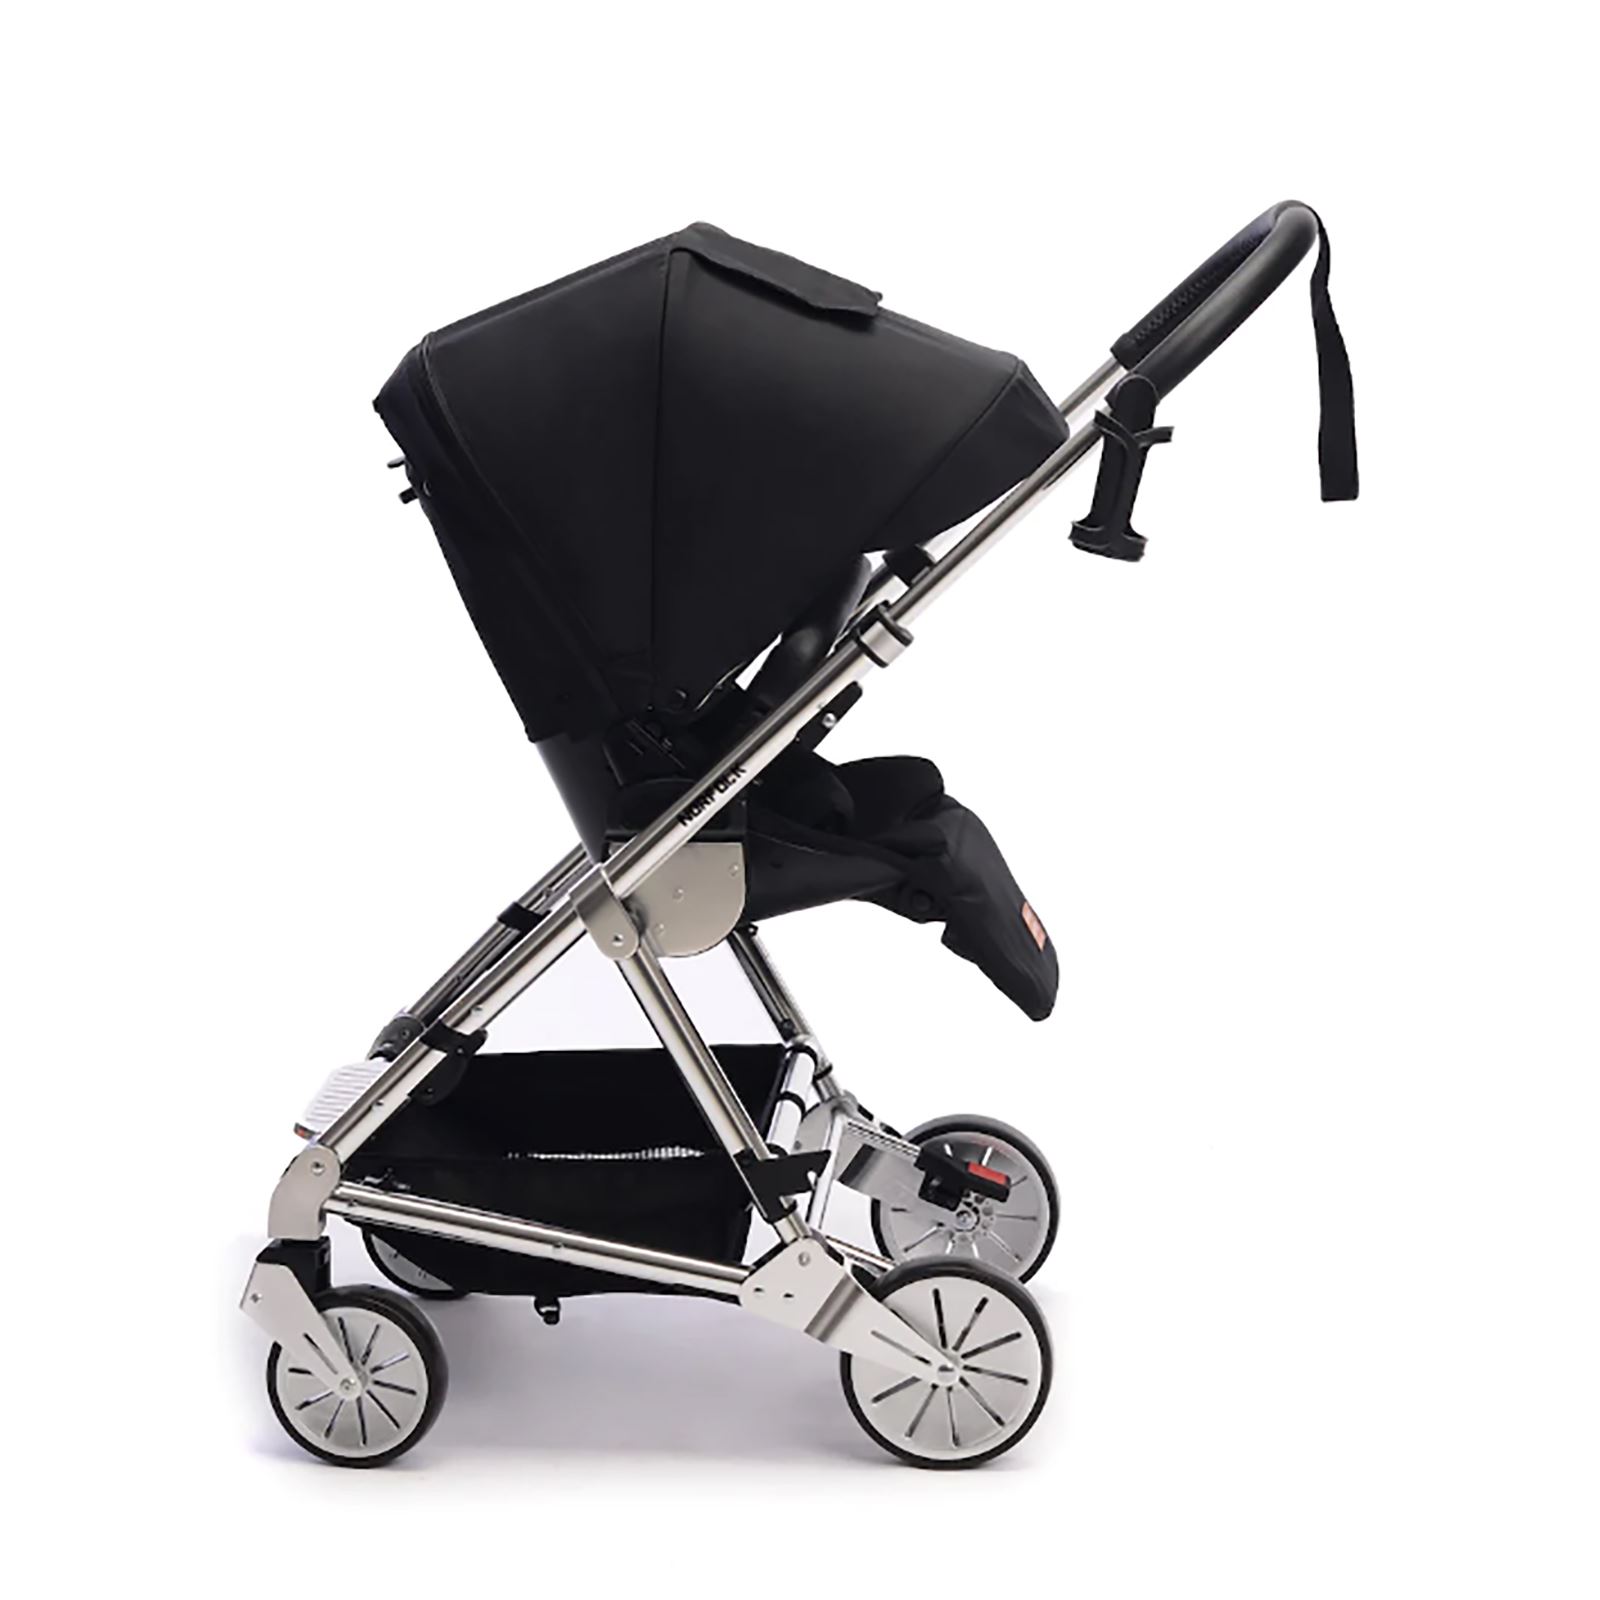 Norfolk Baby Prelude Special Edition Air Luxury Çift Yönlü Bebek Arabası Siyah